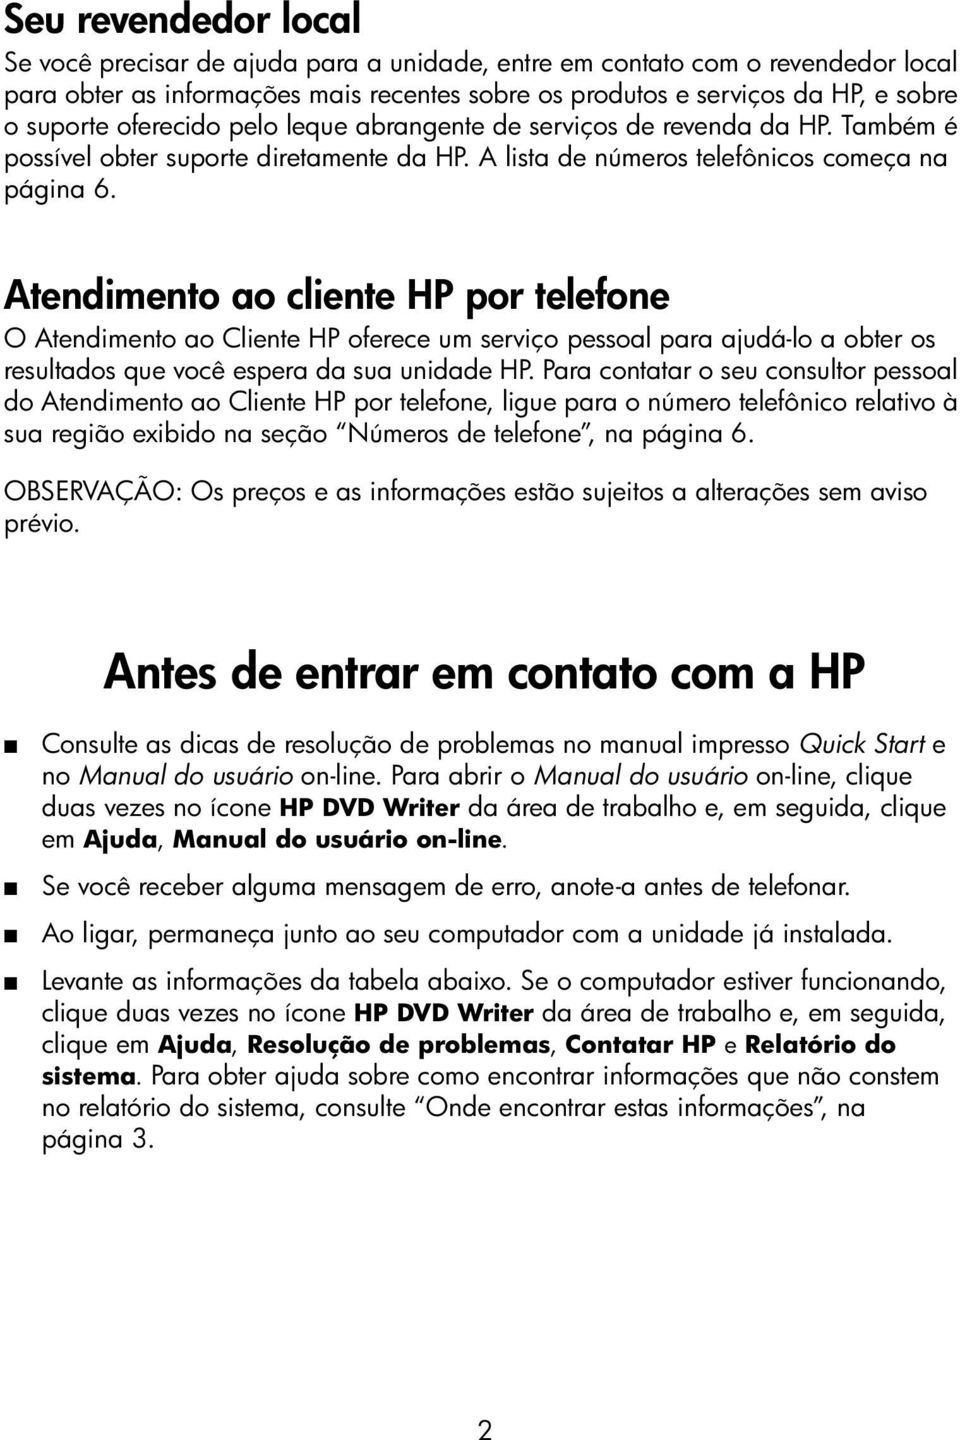 Atendimento ao cliente HP por telefone O Atendimento ao Cliente HP oferece um serviço pessoal para ajudá-lo a obter os resultados que você espera da sua unidade HP.